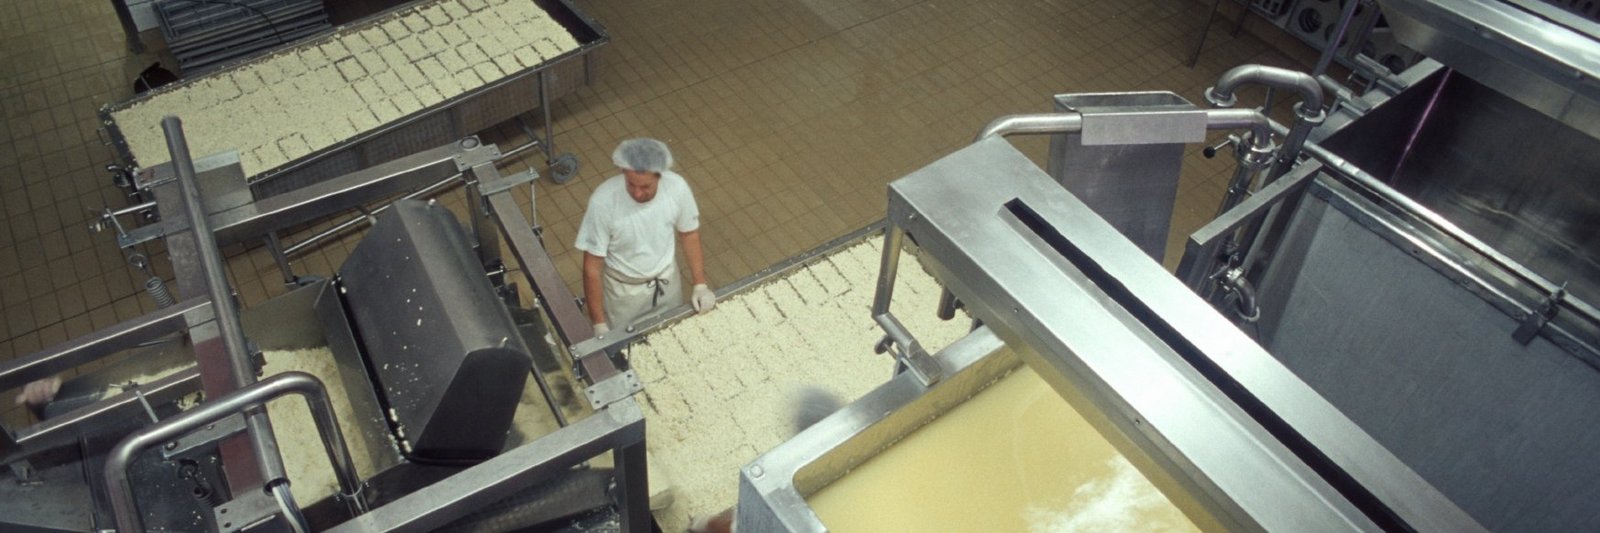 Produktionsstätte Milchwerk.